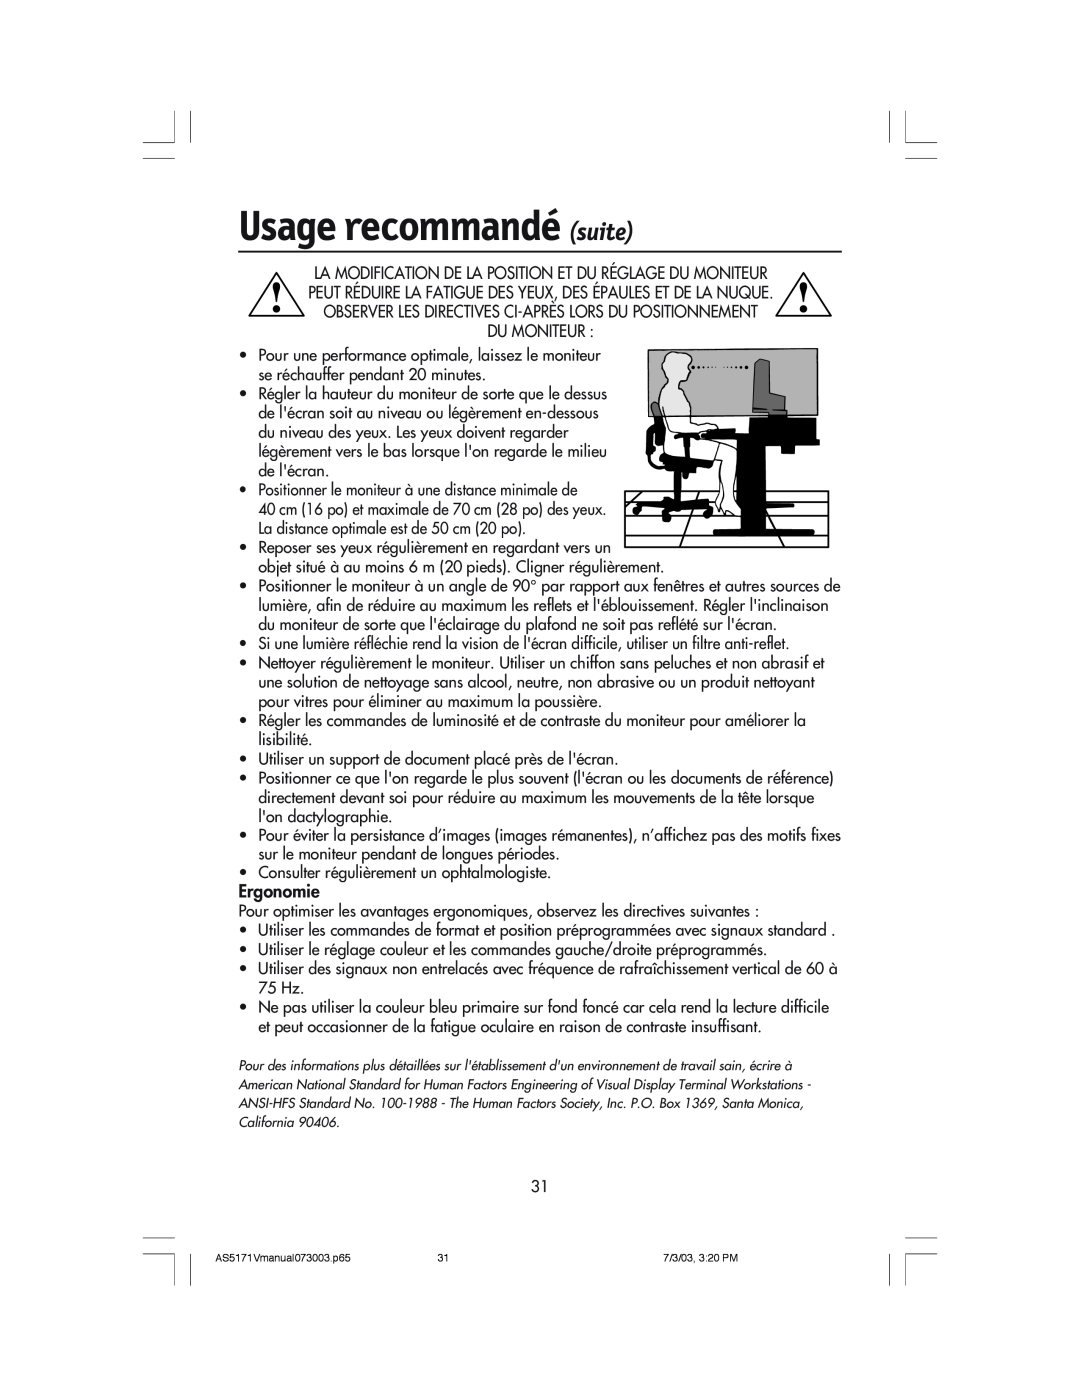 NEC LCD71V manual Usage recommandé suite, OBSERVER LES DIRECTIVES CI-APRéS LORS DU POSITIONNEMENT DU MONITEUR, Ergonomie 